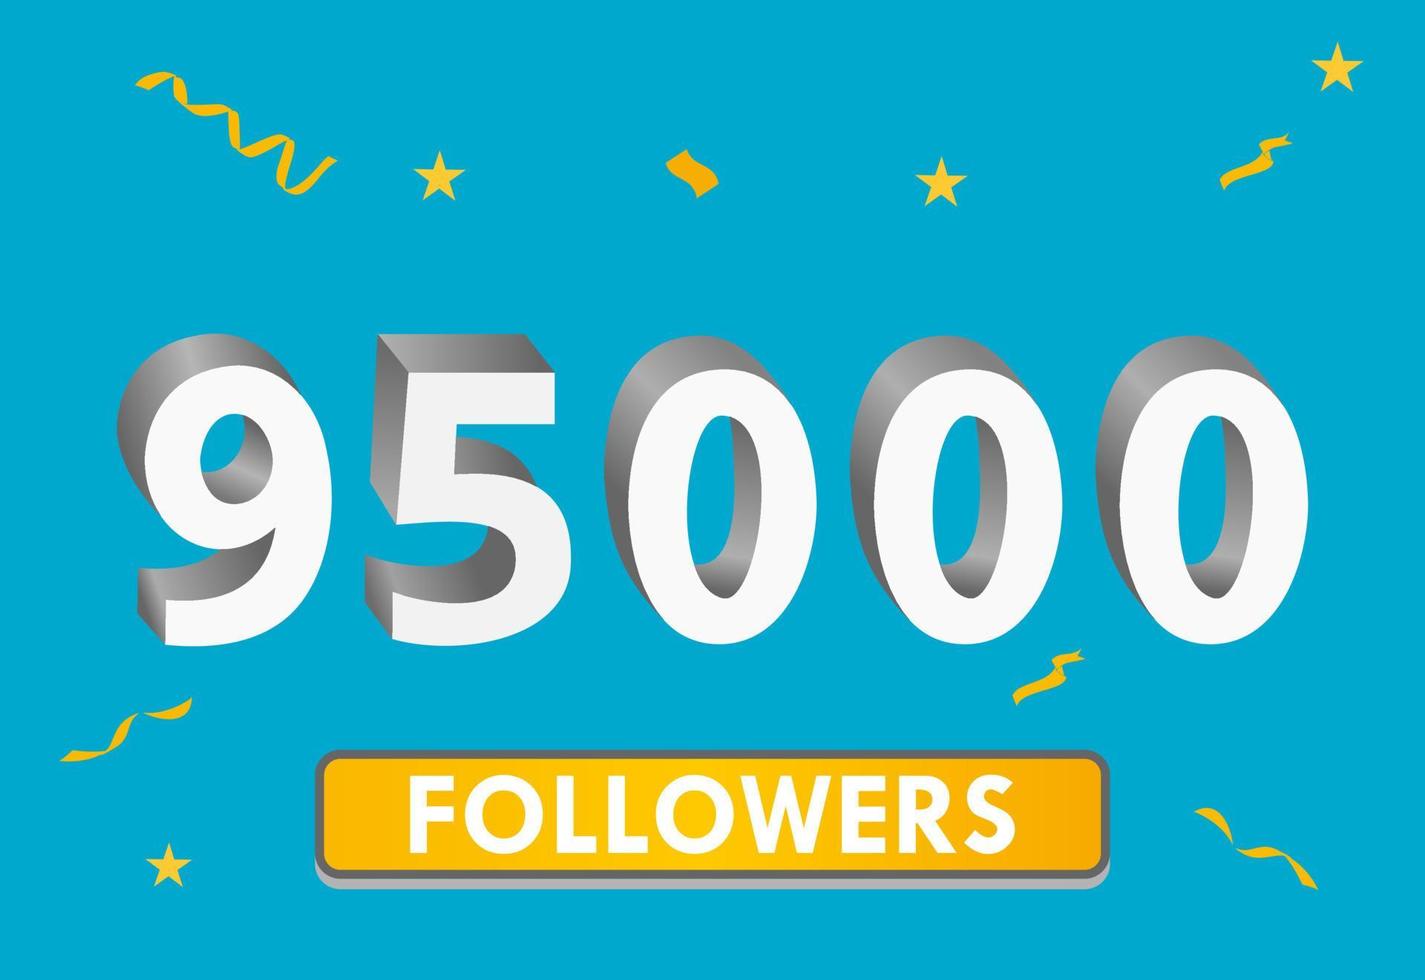 illustration 3d-nummer för sociala medier 95k likes tack, firar prenumeranter fans. banner med 95 000 följare vektor